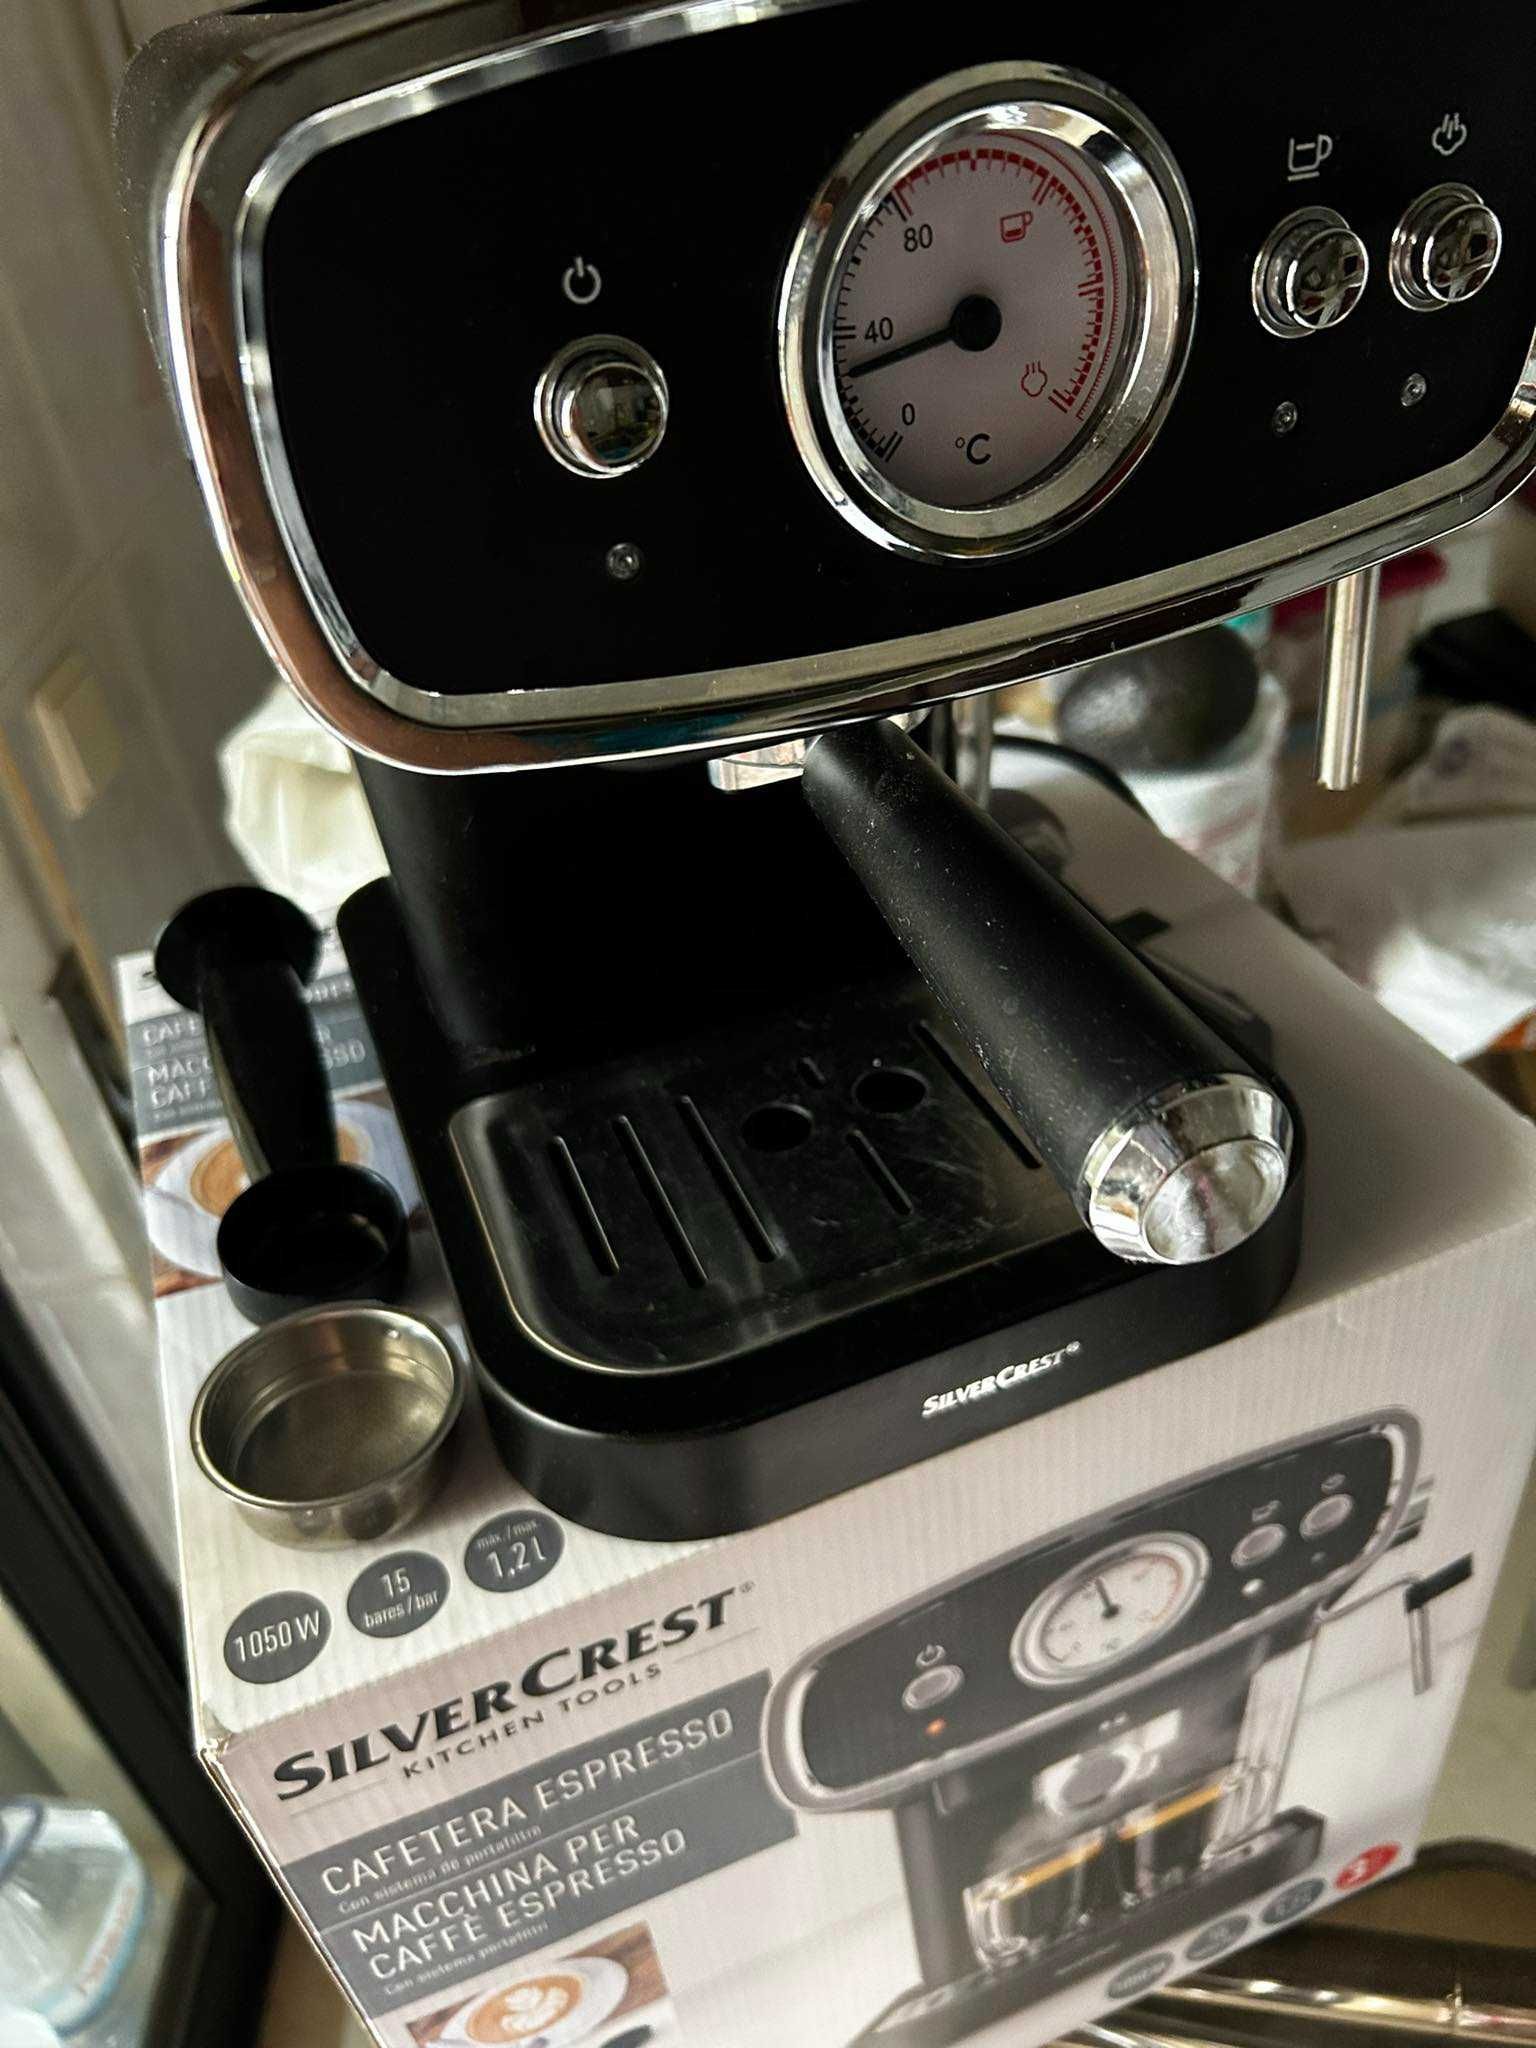 Máquina de Café Expresso